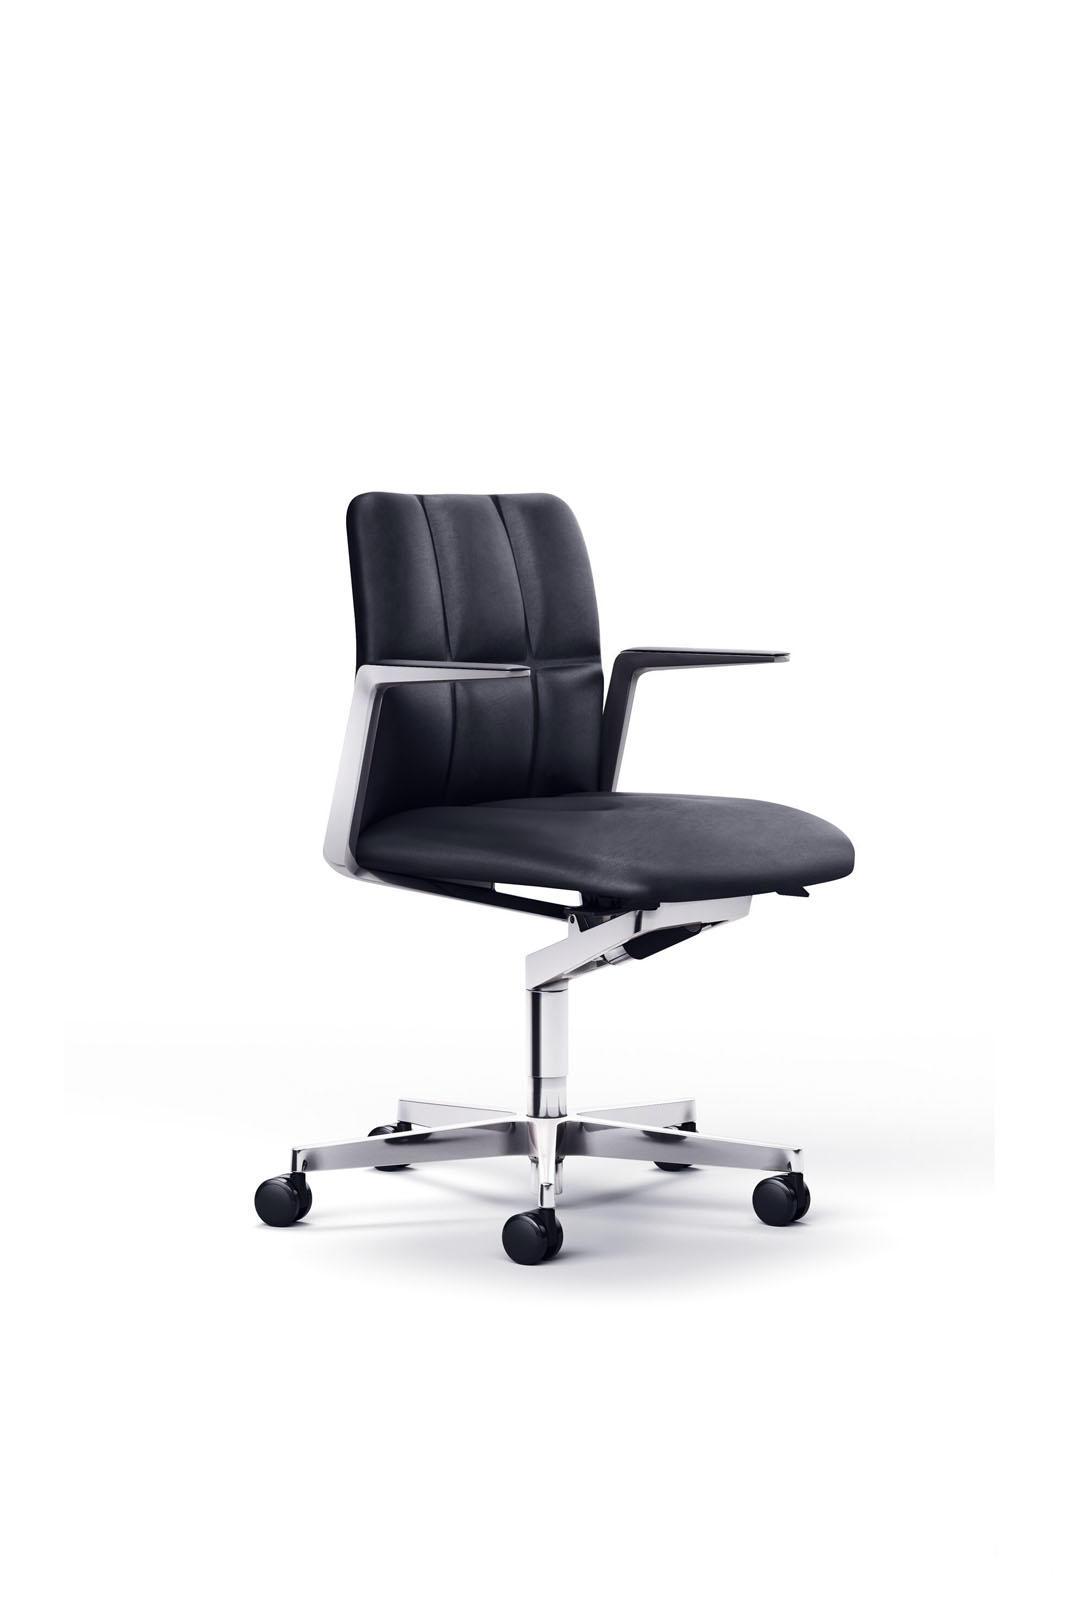 Офисное кресло Leadchair Management 2070 от Walter Knoll — Фотография 1